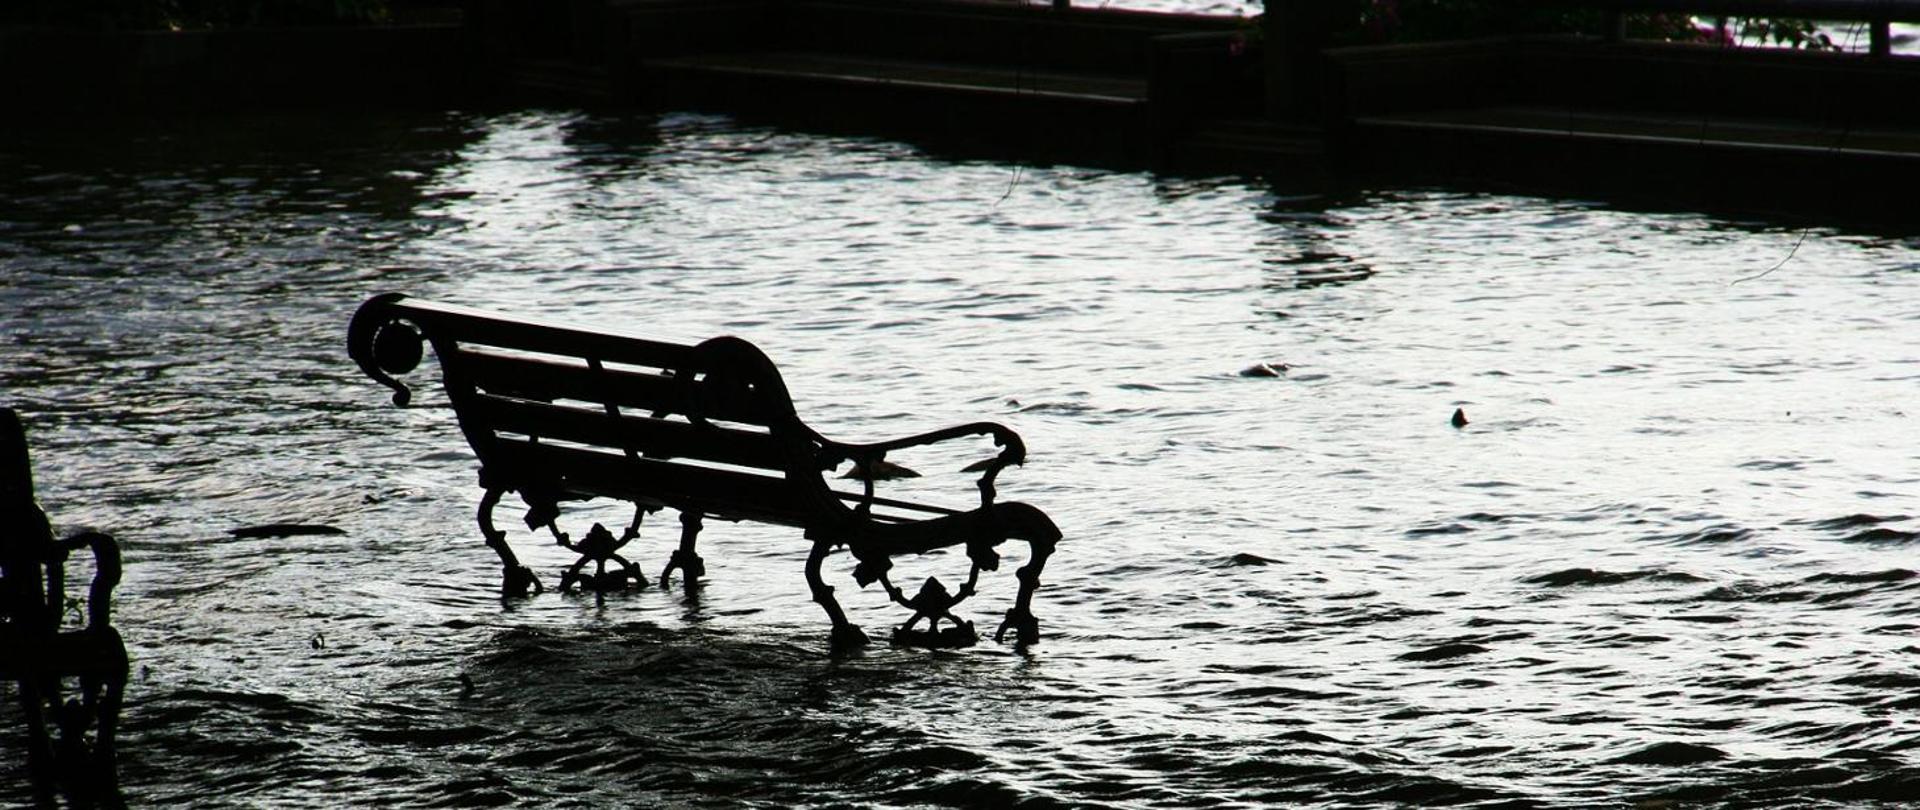 Na zdjęciu znajduje się ławka, która stoi w wodzie. Zdjęcie obrazuje zalanie spowodowane gwałtowną ulewą.